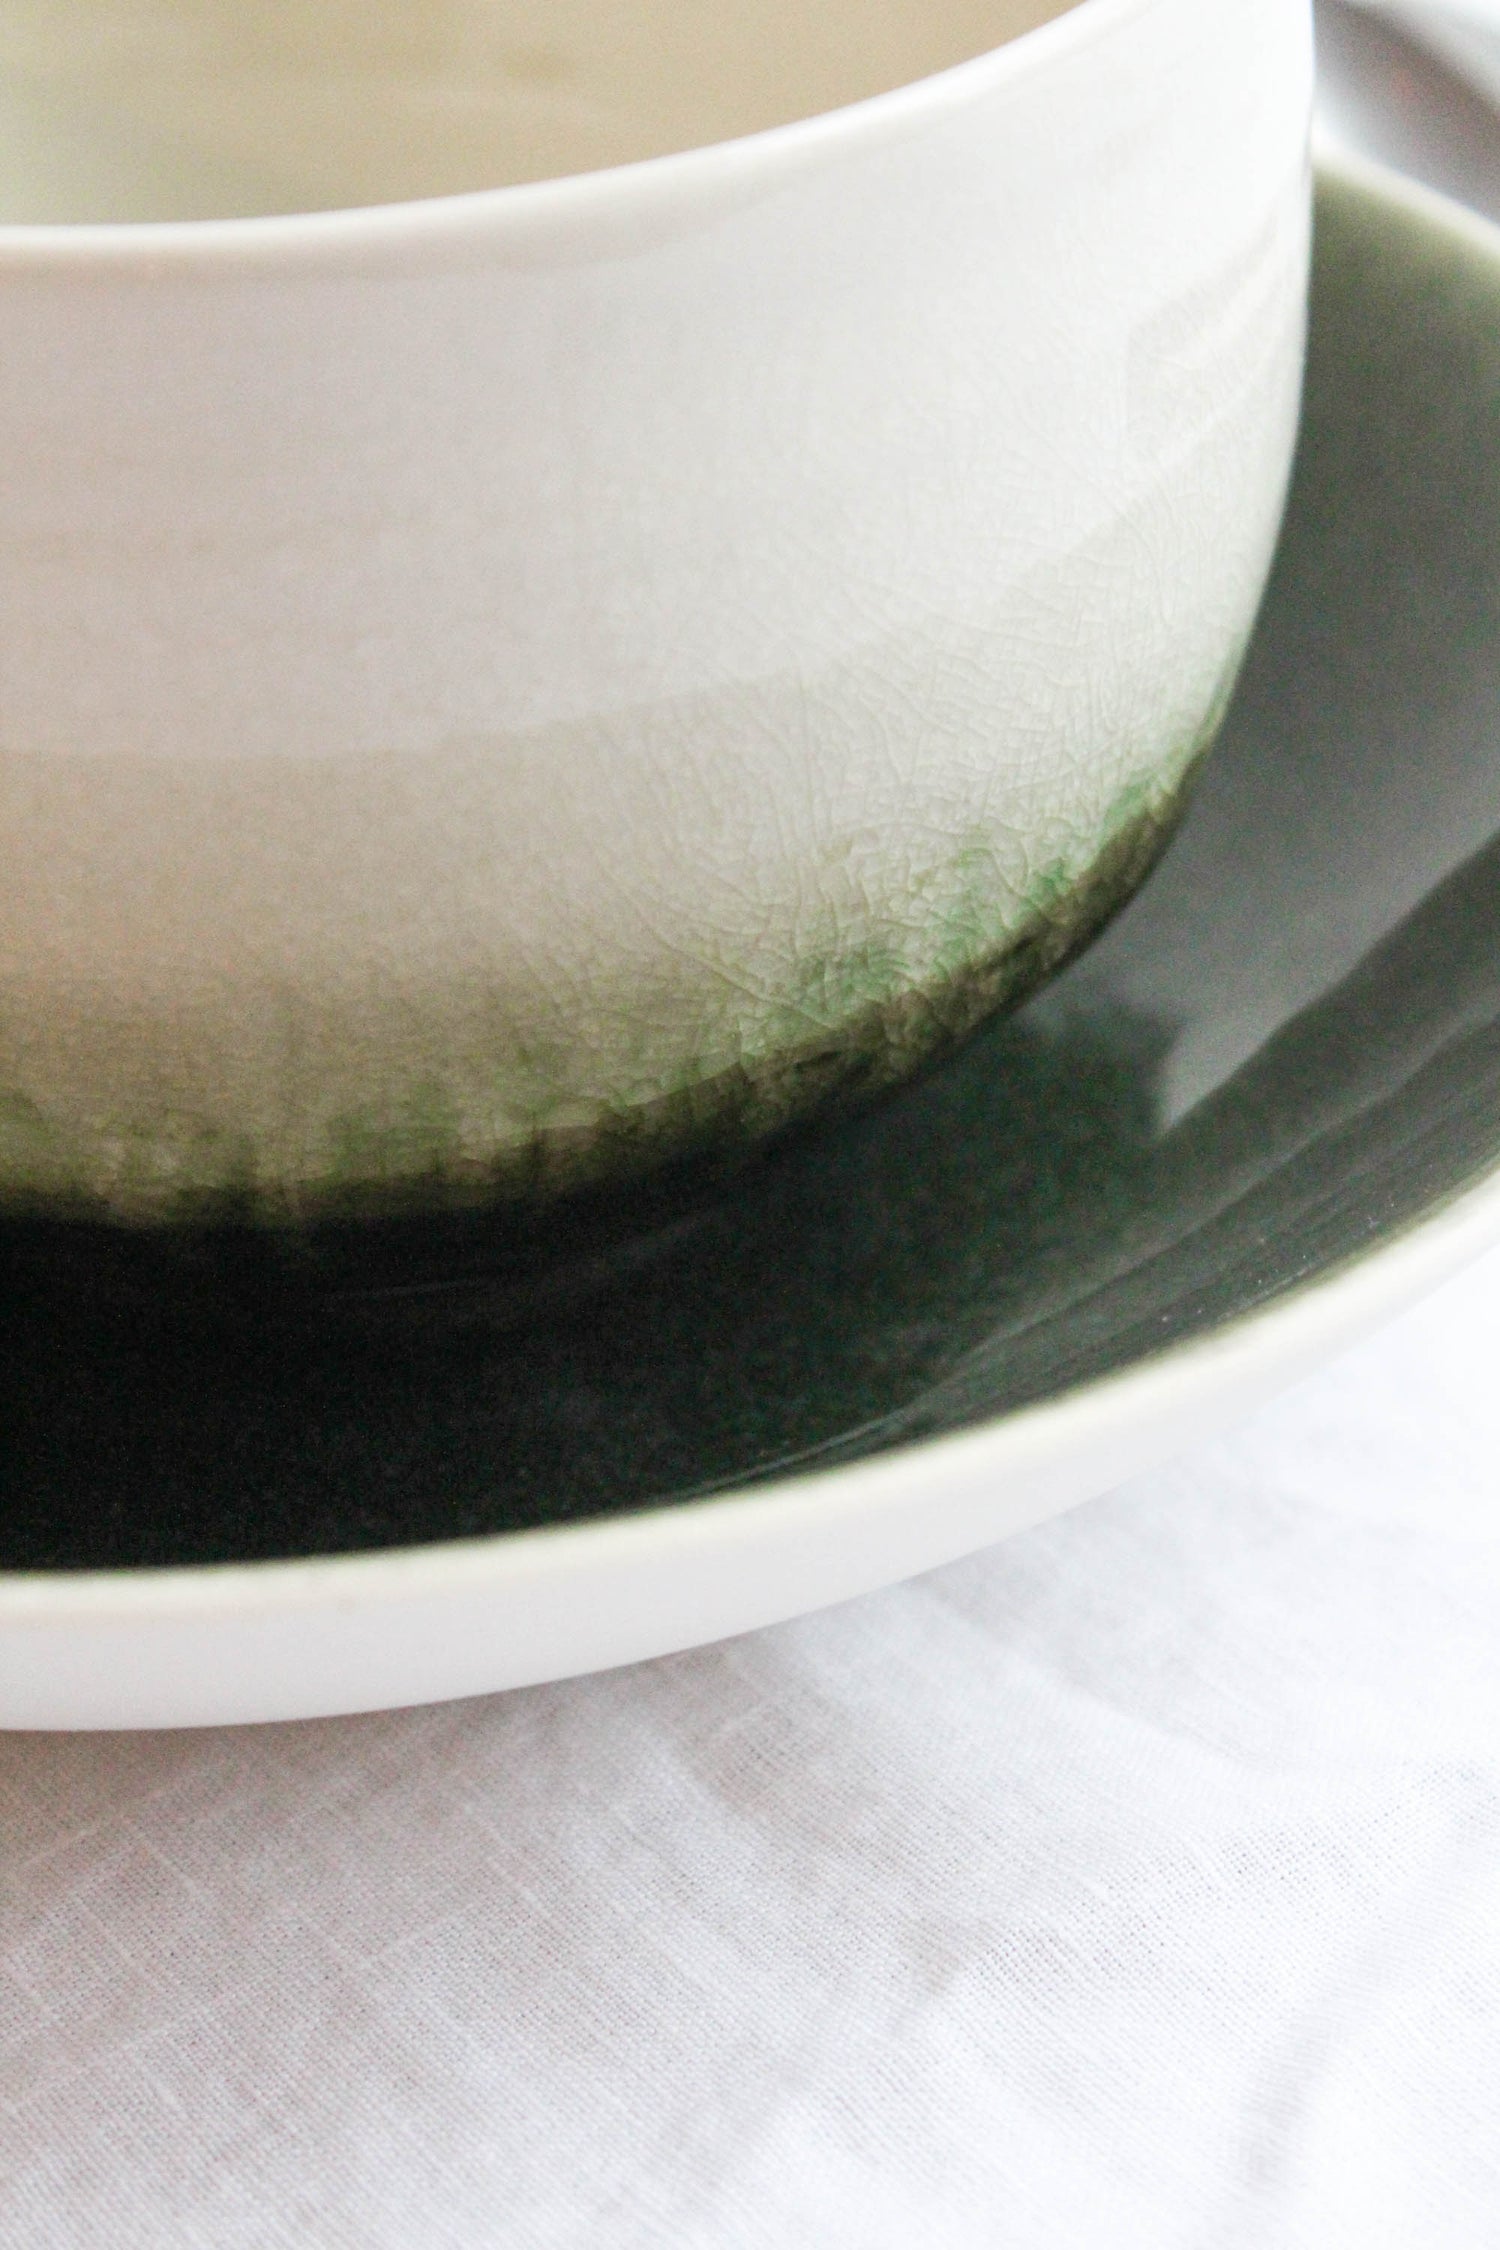 Details of the Dashi Bowl Vert Olive by Jars Ceramistes.